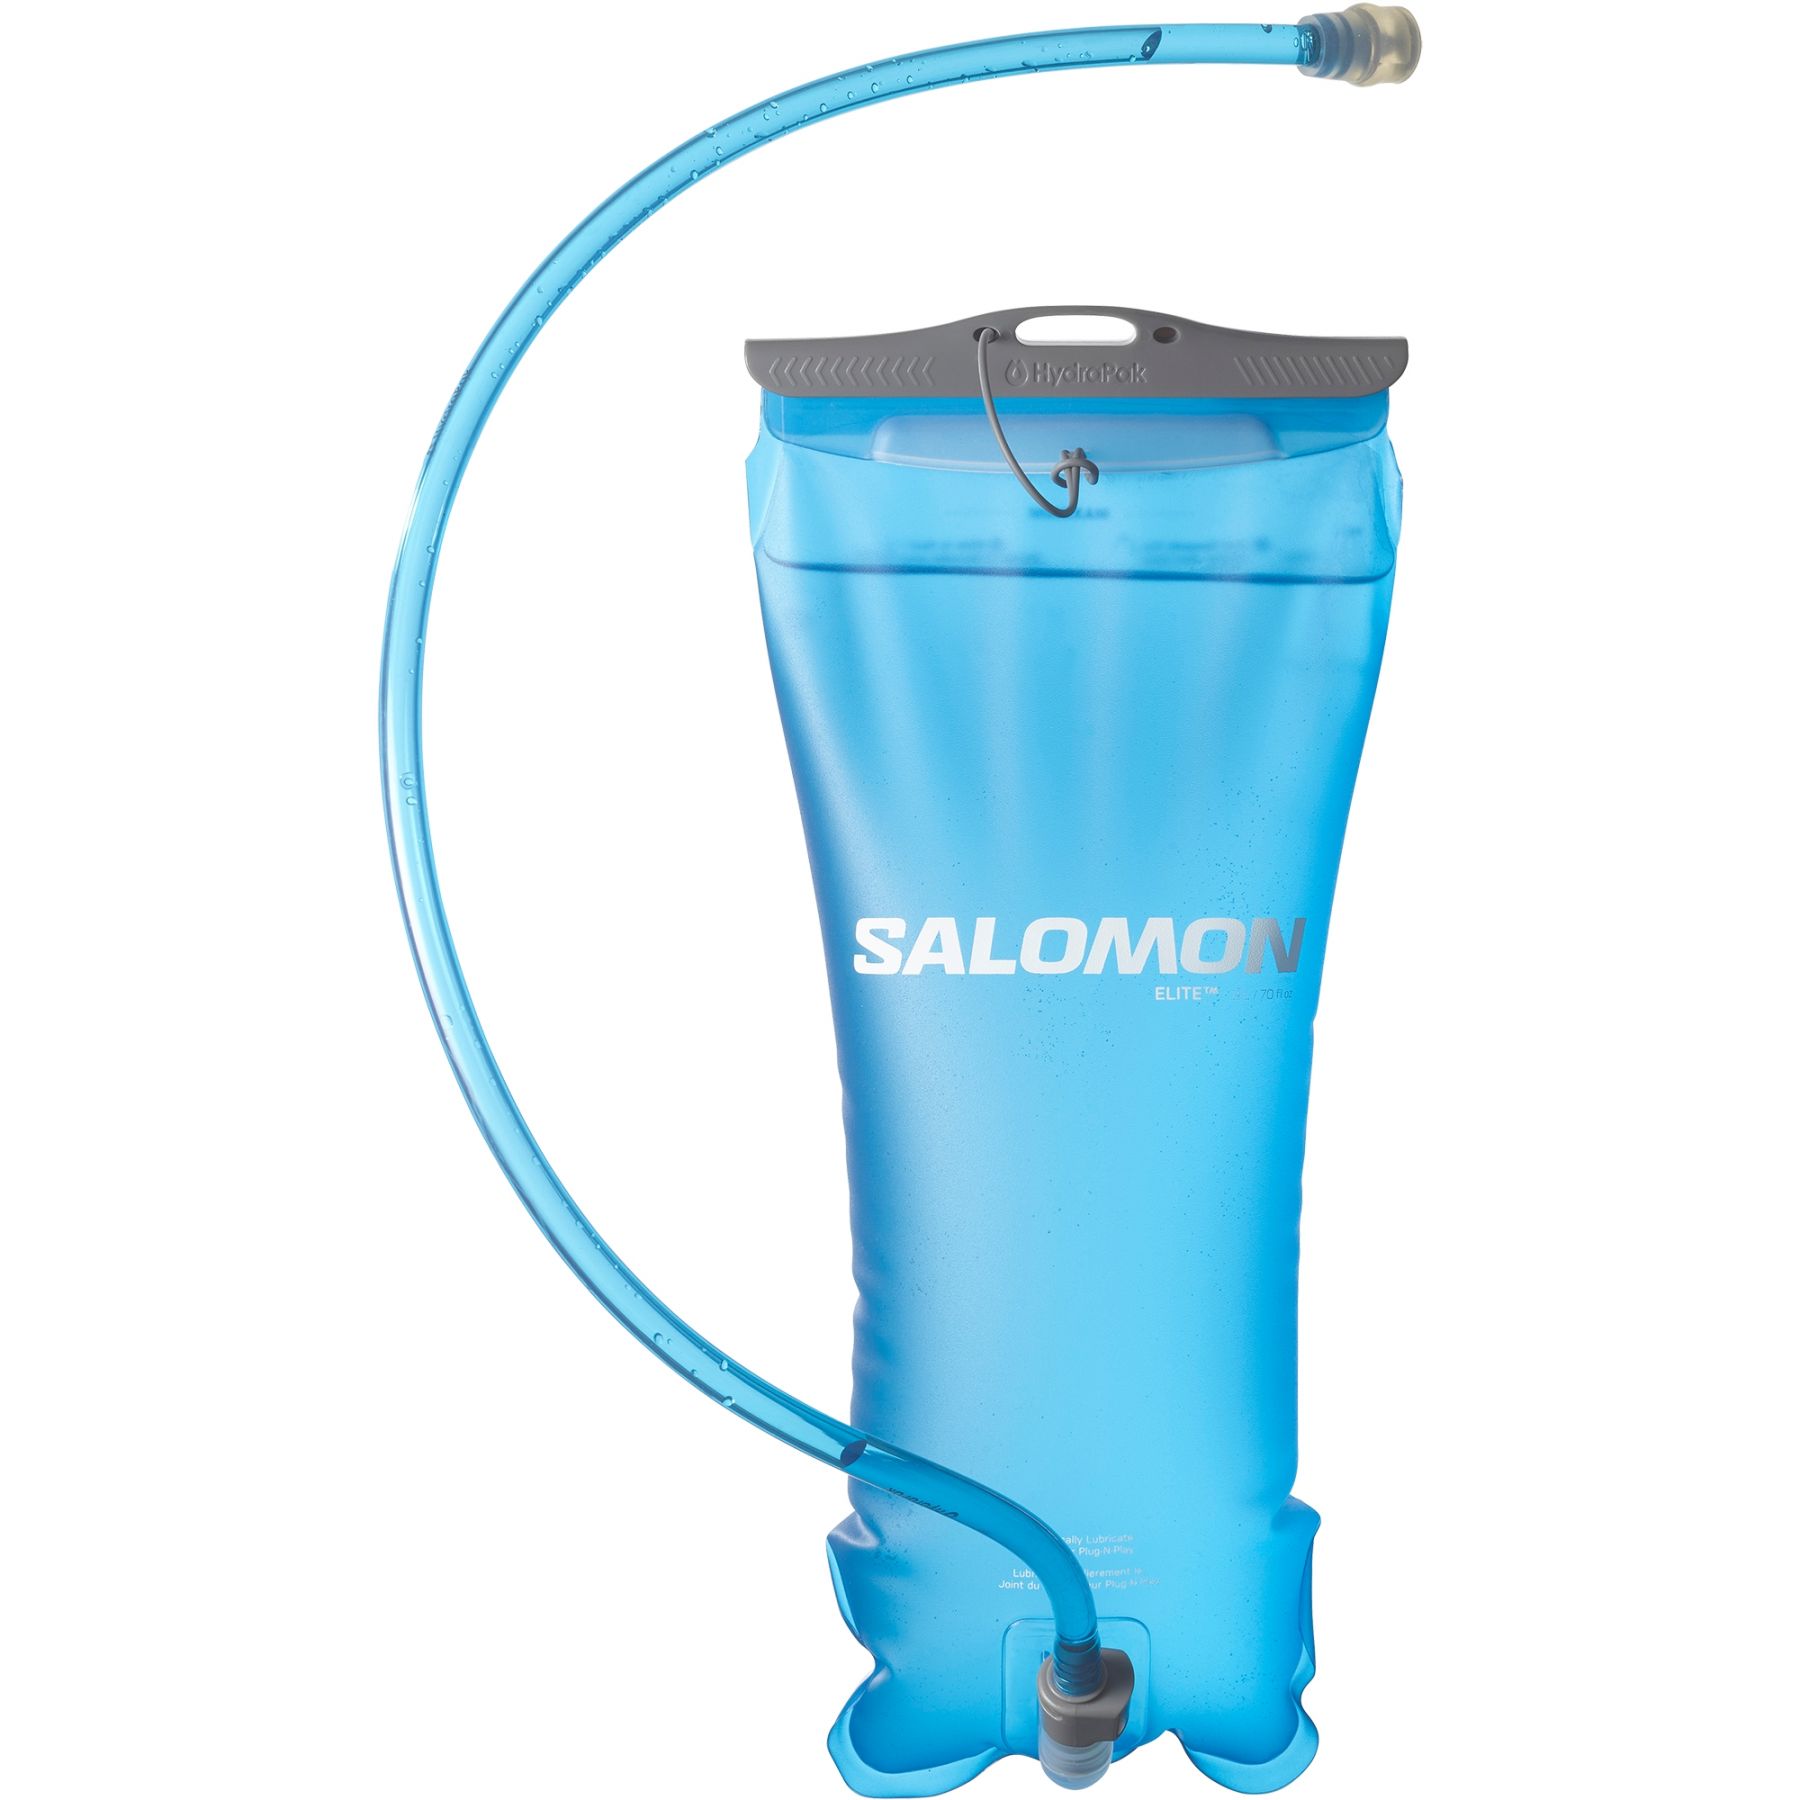 Brug Salomon Soft Reservoir, vandblære, 2L, blå til en forbedret oplevelse